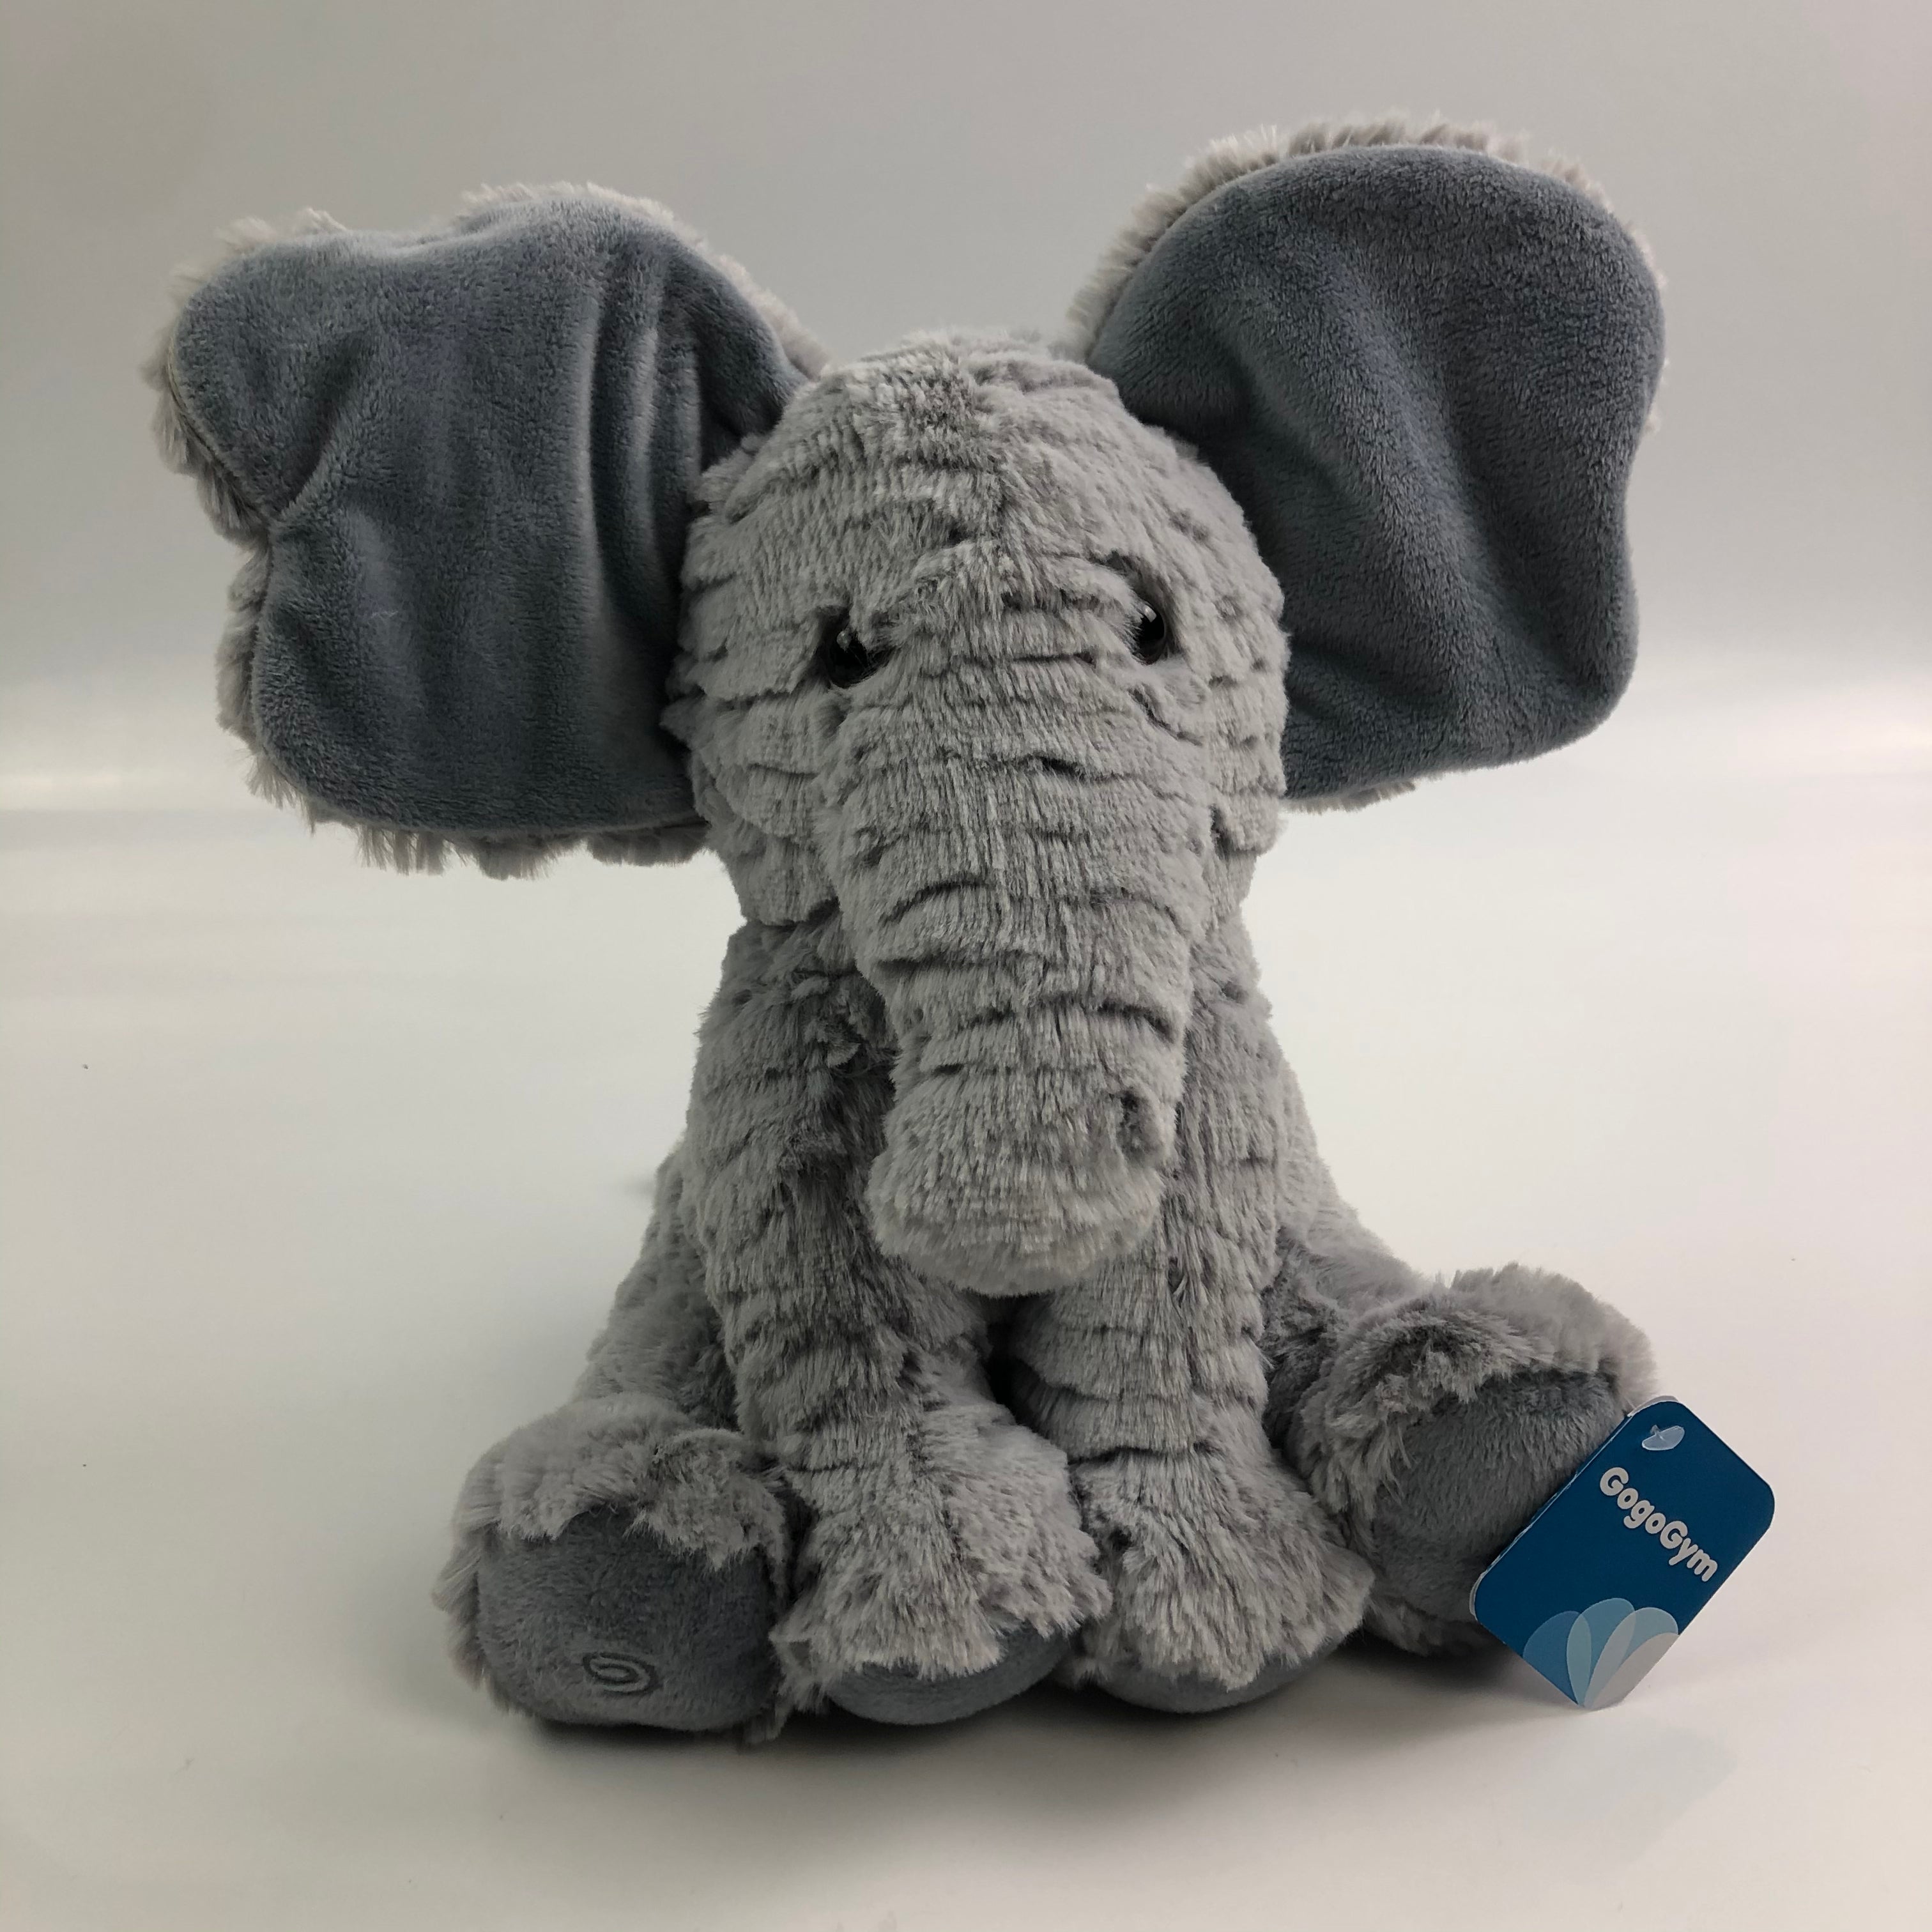 GoGoGym Stuffed Elephant Animal Plush Toy - Glow Guards